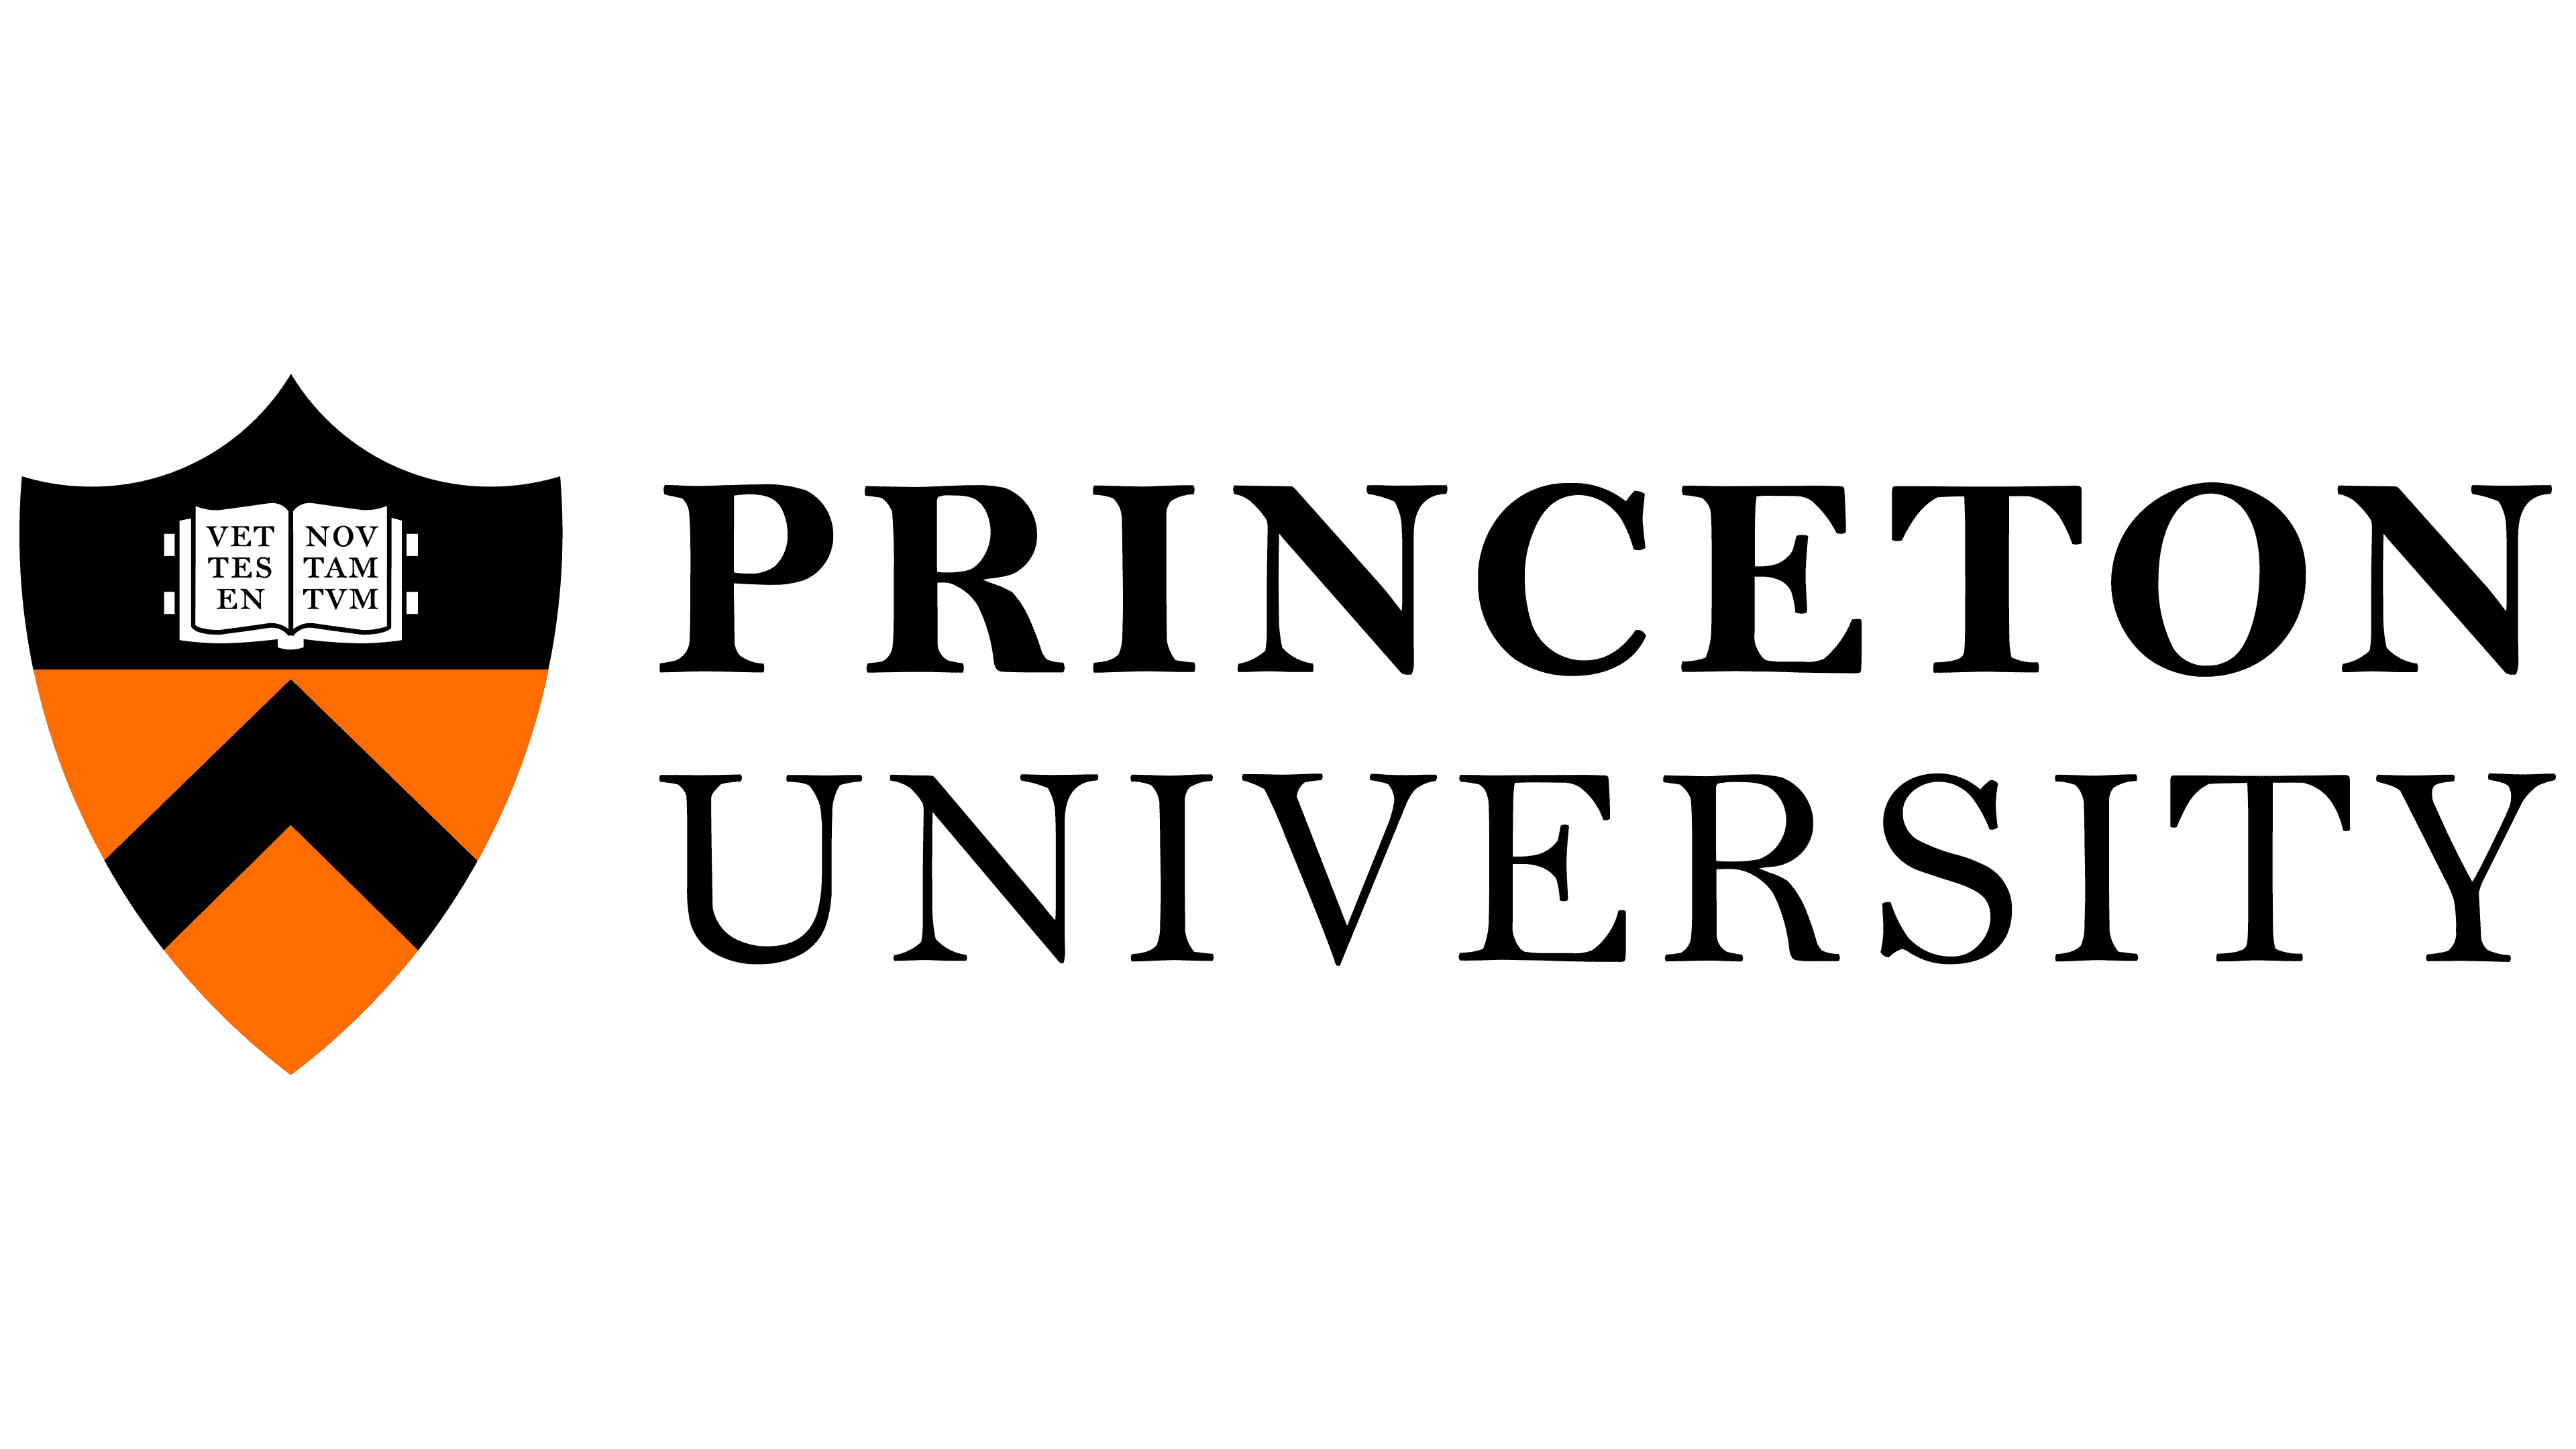 Ameerika ülikoolide ja kolledžite 10 parimat logo